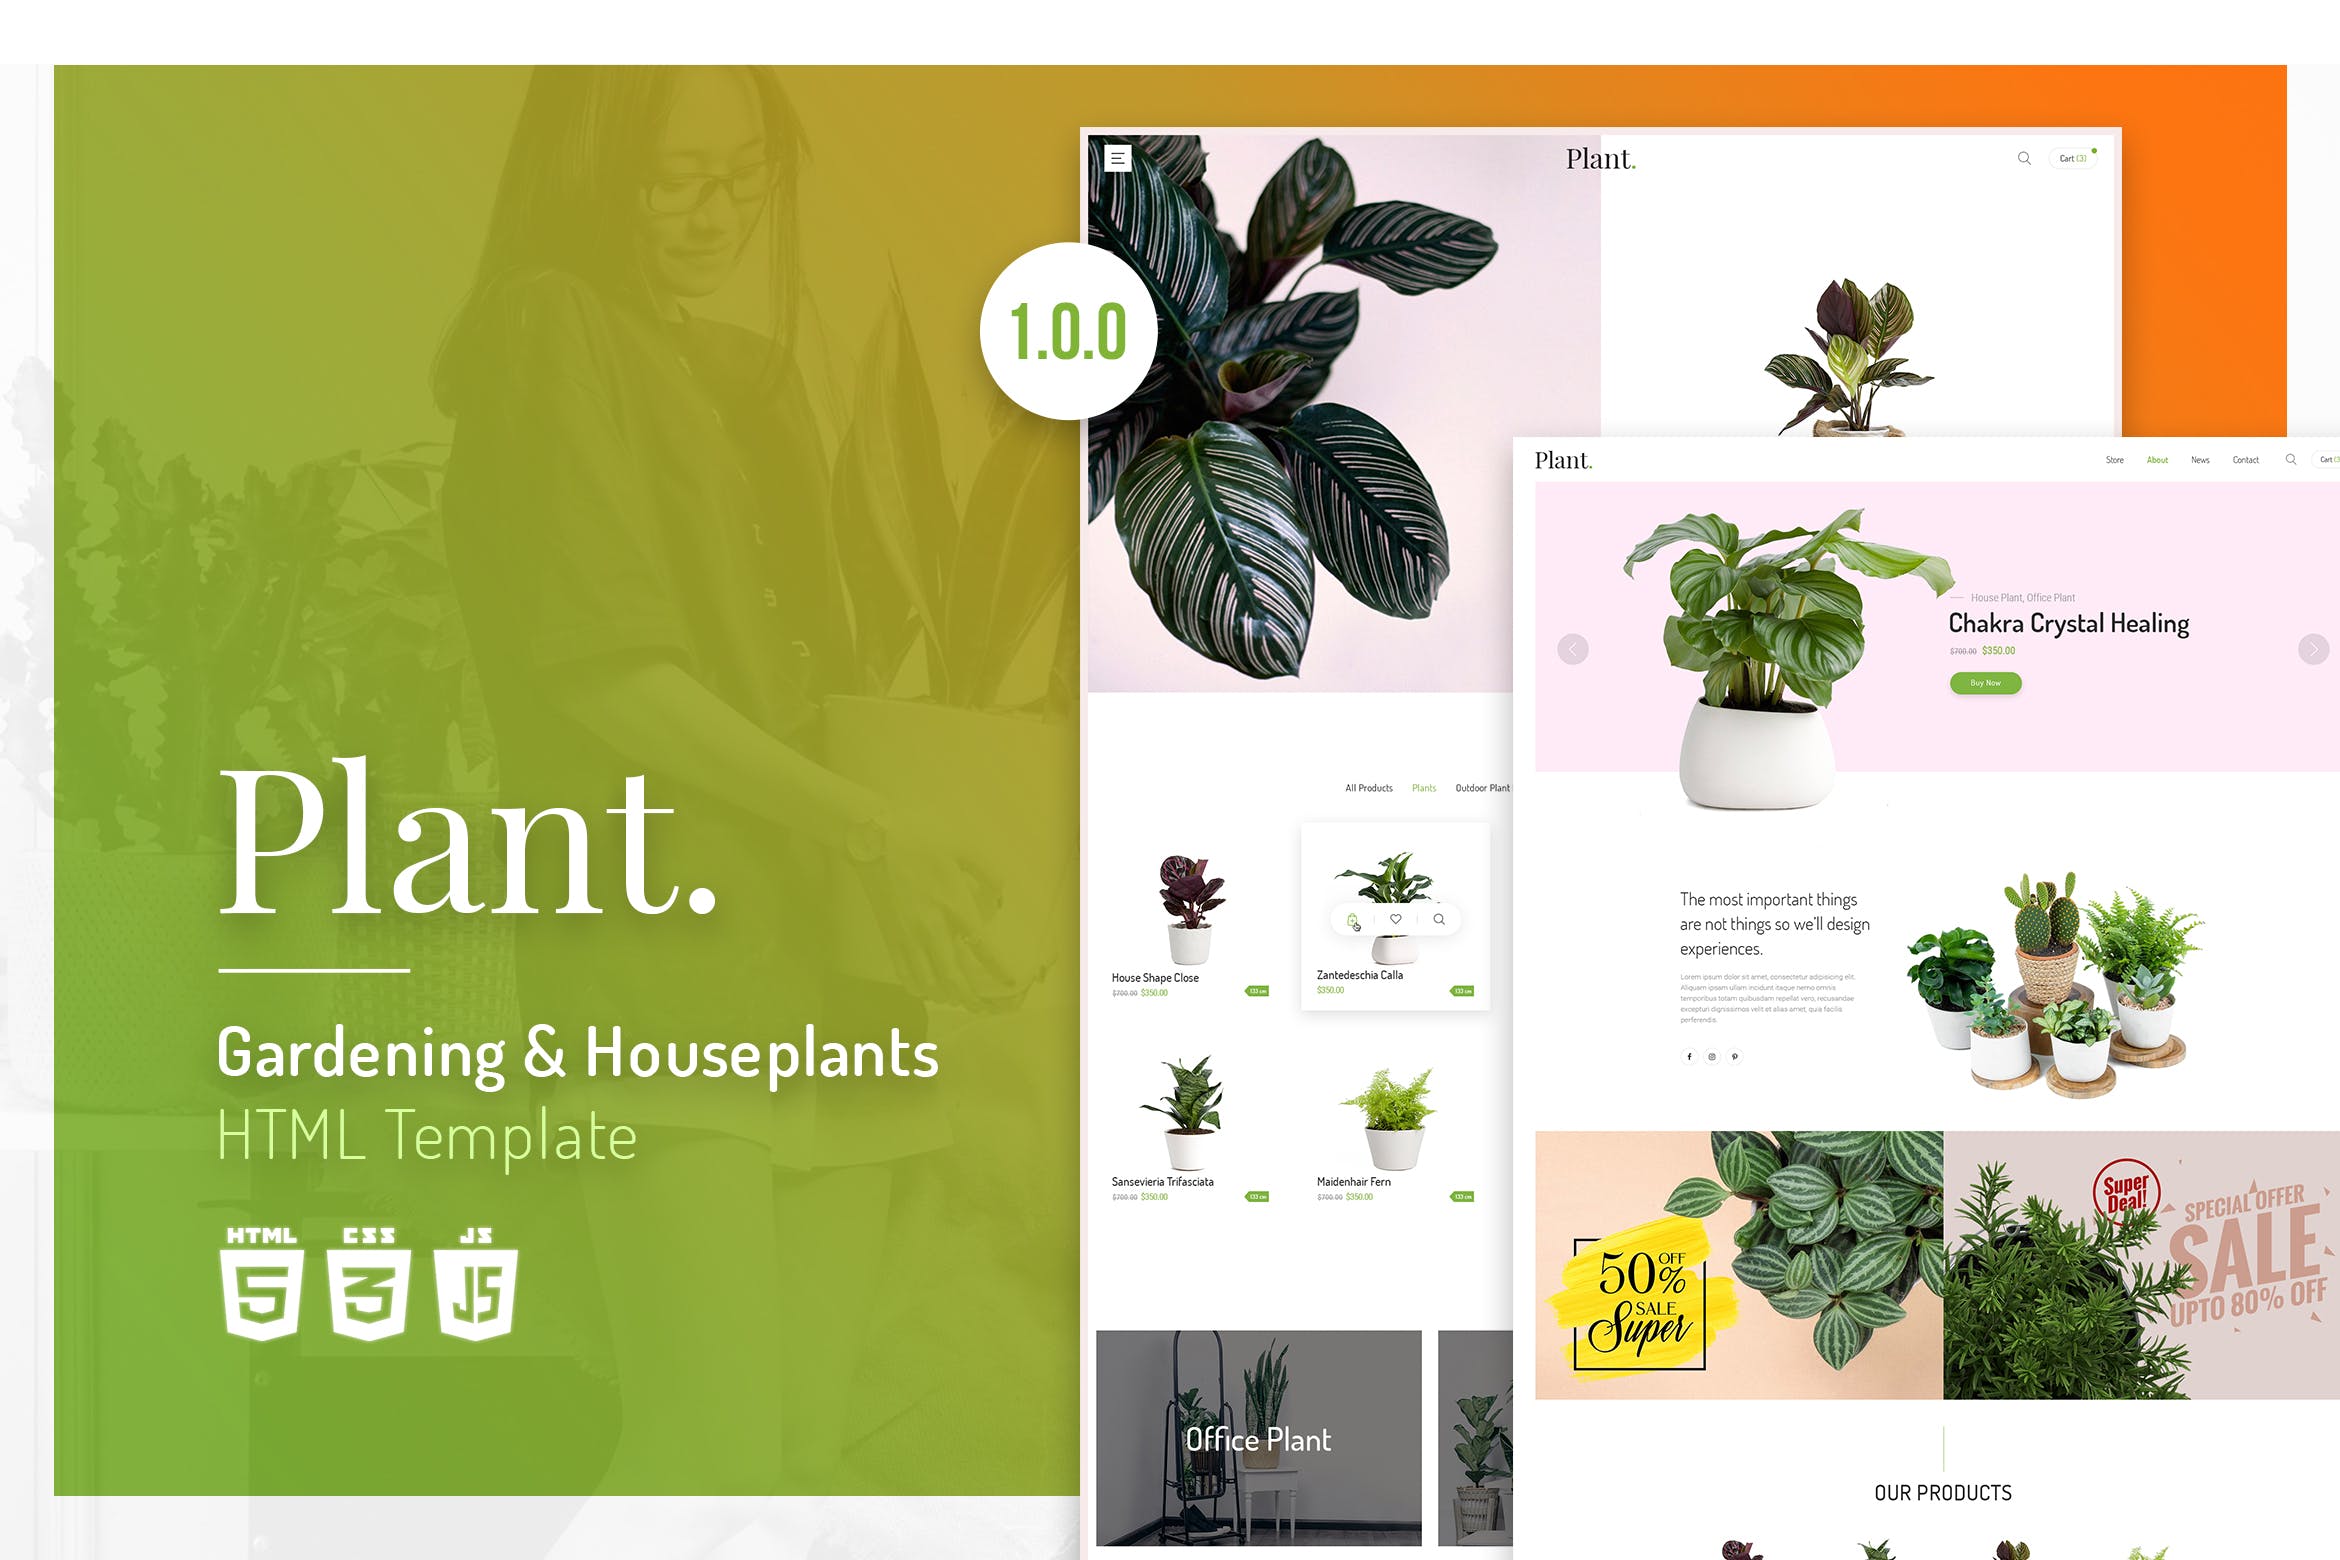 植物园艺设计/盆栽植物网上商城HTML模板16设计网精选 Plant | Gardening & Houseplants HTML Template插图